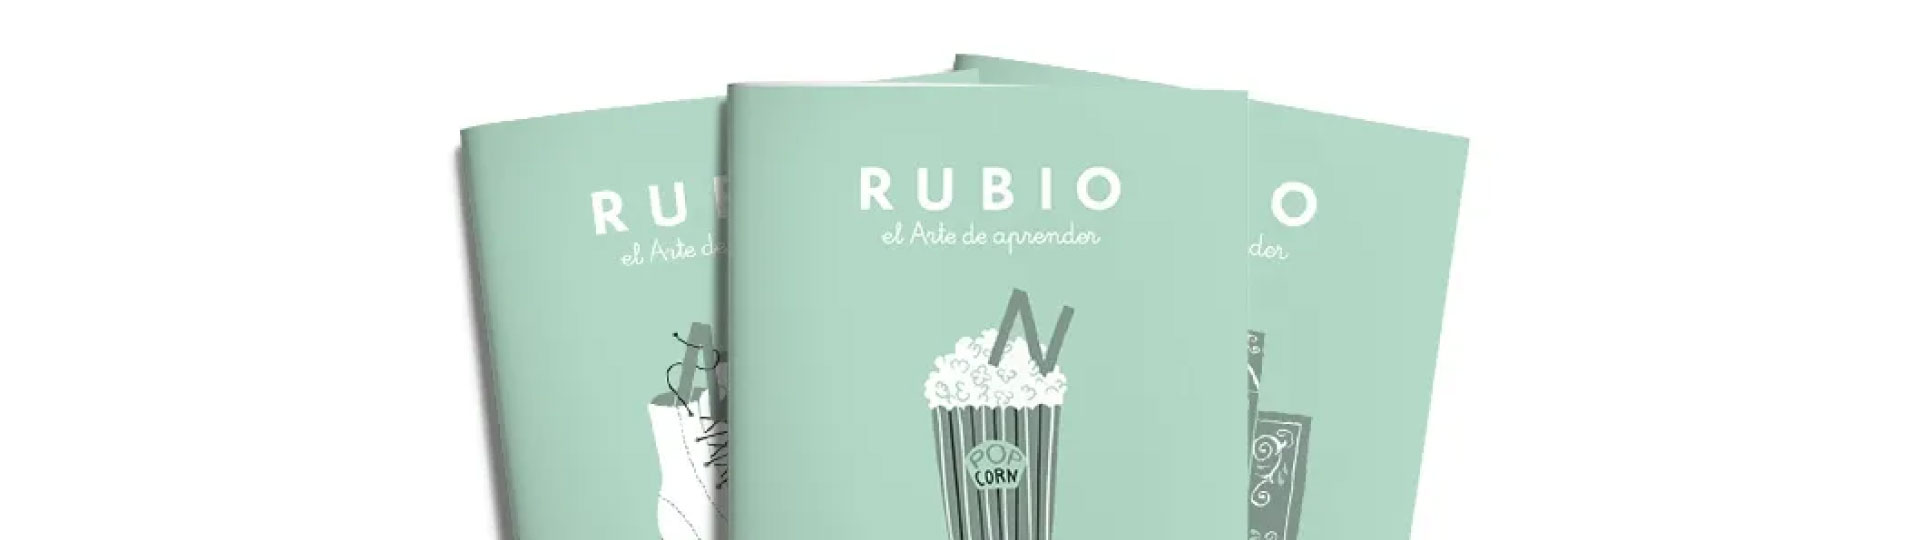 Cuadernos escritura  Rubio